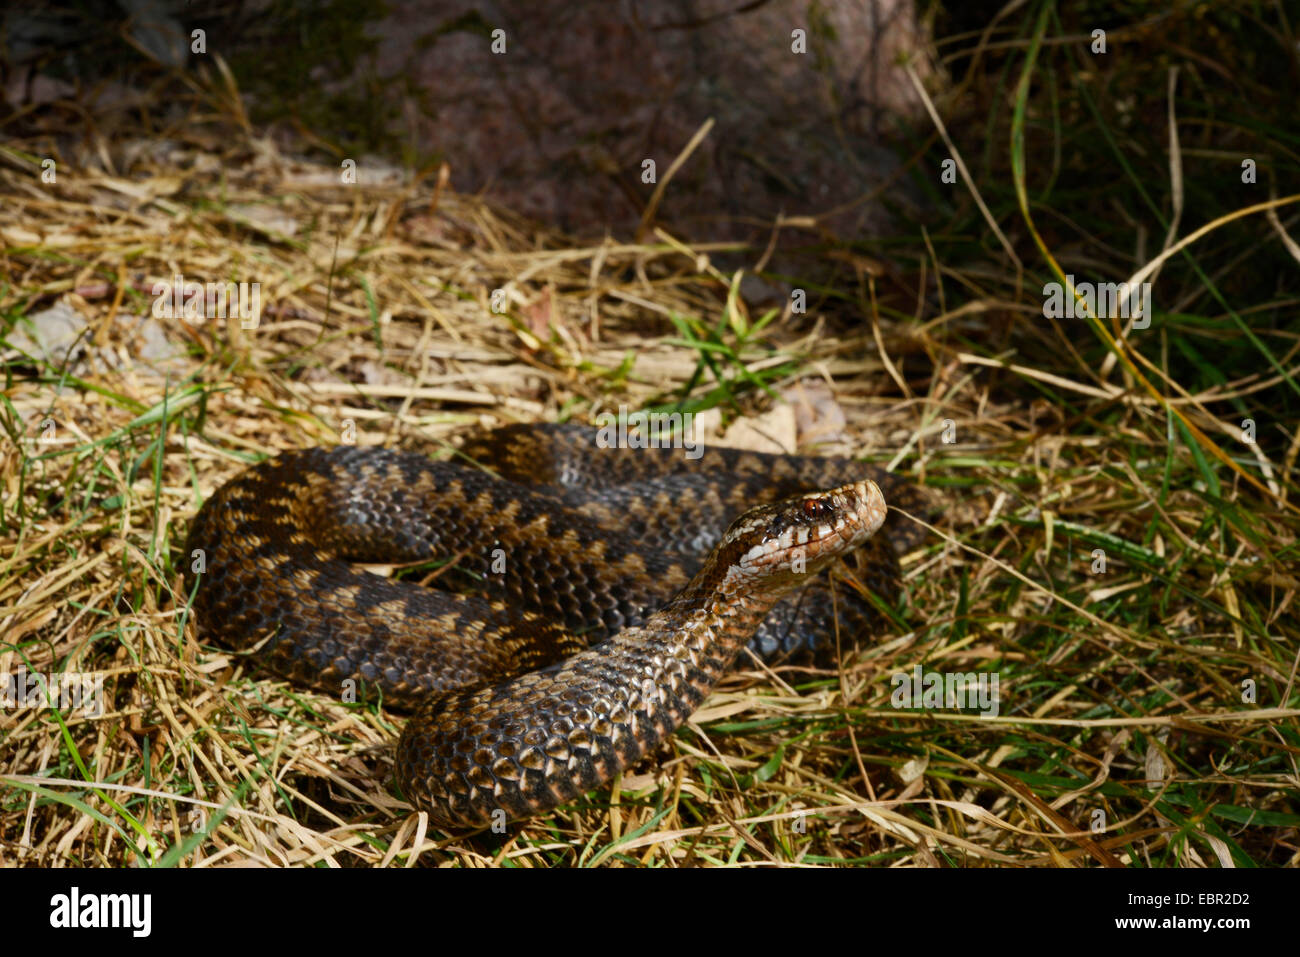 adder, common viper, common European viper, common viper (Vipera berus), erecting adder, Sweden, Smaland Stock Photo